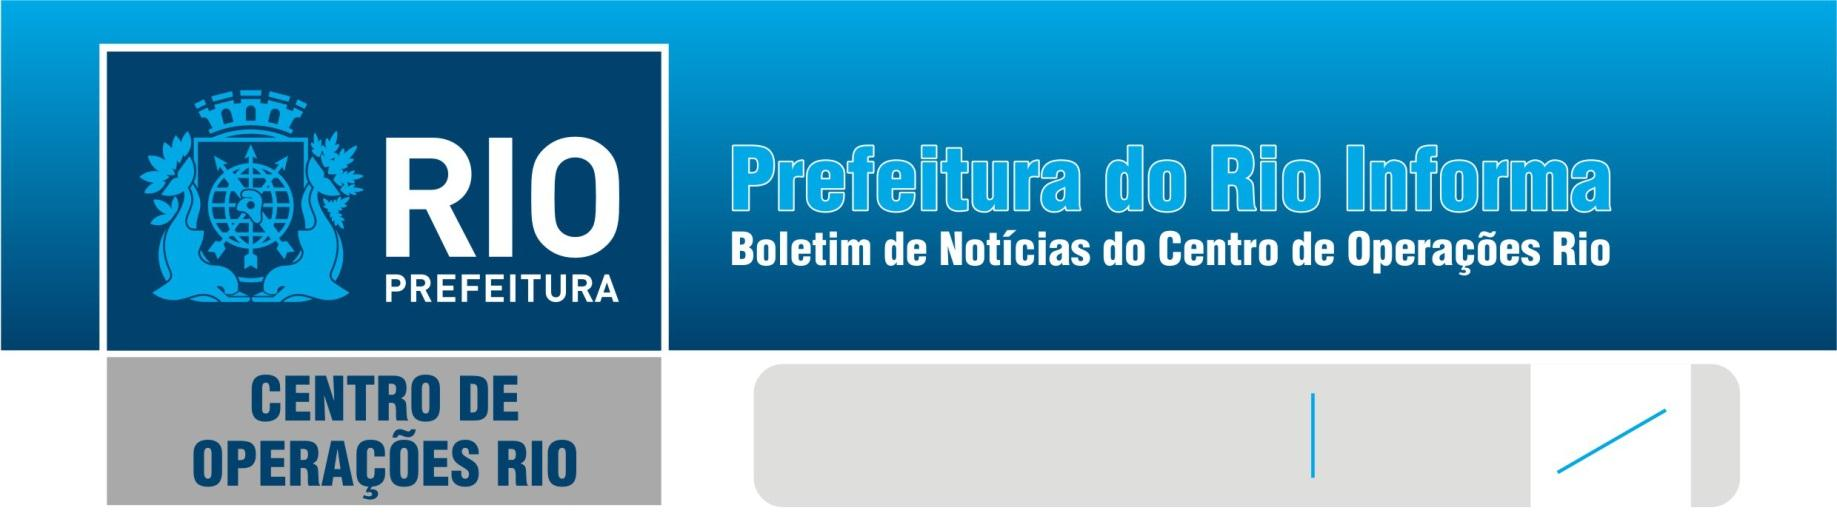 Sexta-feira 30/12/11 29º 18º Veja as principais informações sobre o planejamento operacional para o Réveillon de Copacabana no boletim especial, disponível pra leitura no link: http://ow.ly/8be8c.